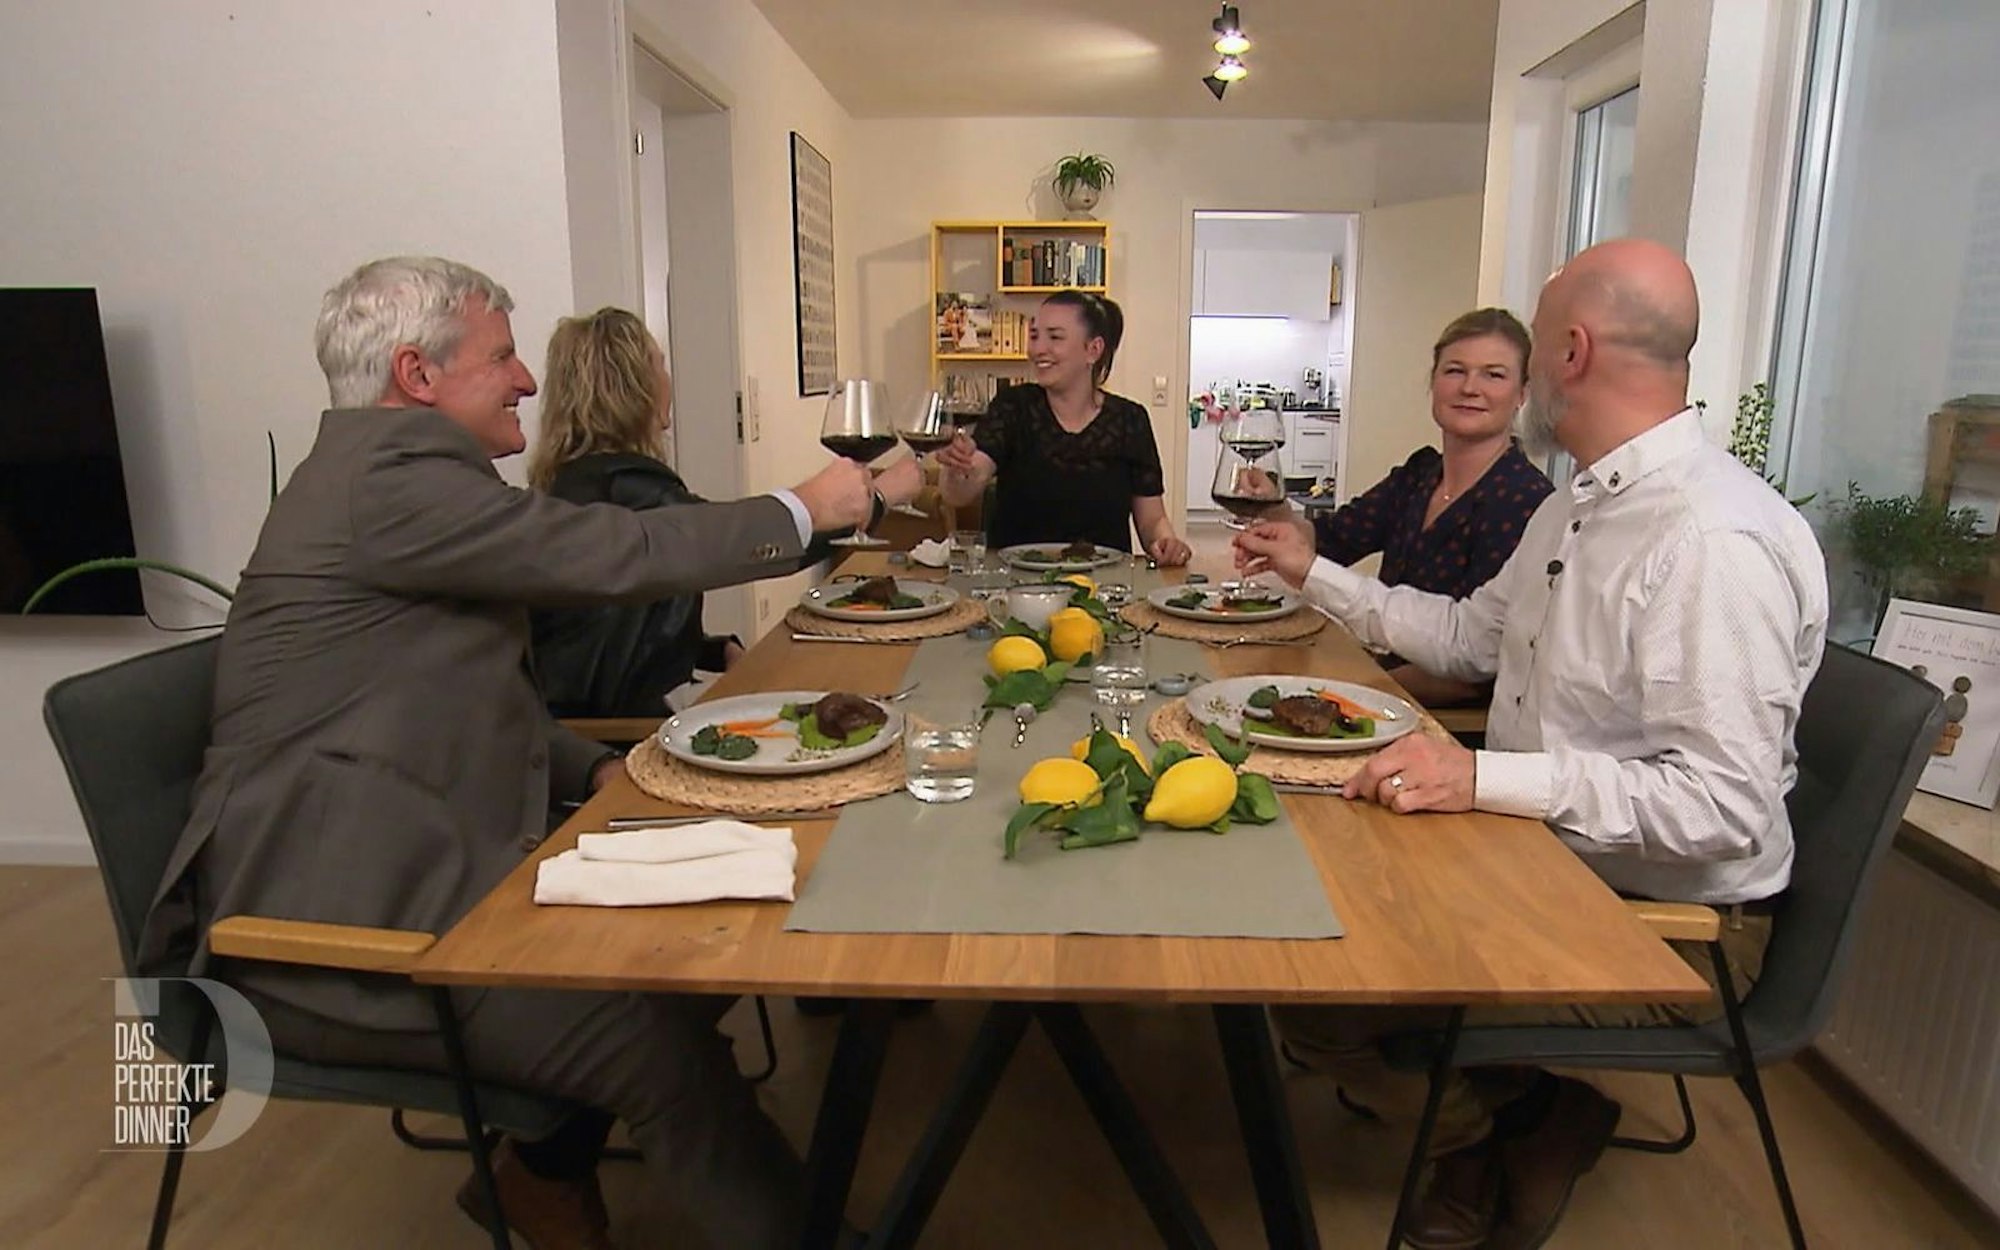 Der Hauptgang ist serviert, die Gäste stoßen auf leckere Kalbsbäckchen mit Zitronen-Erbsen-Püree und Malfatti an, von links: Jochen, Esther, Hannah, Lena und Uli.
 (Bild: RTL)